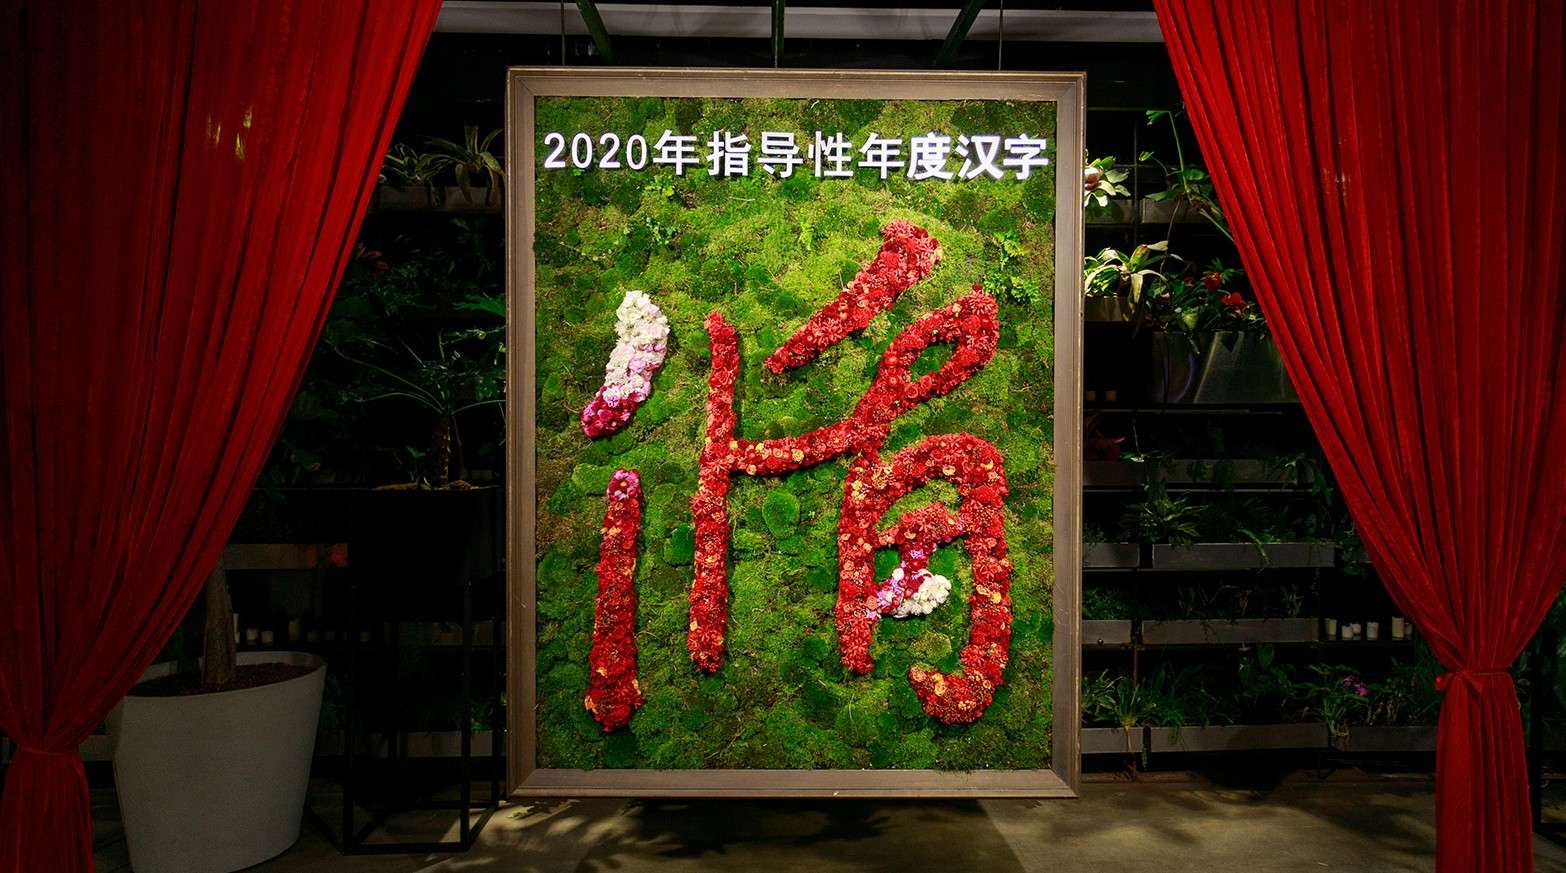 2020指导性年度汉字“循”发布会